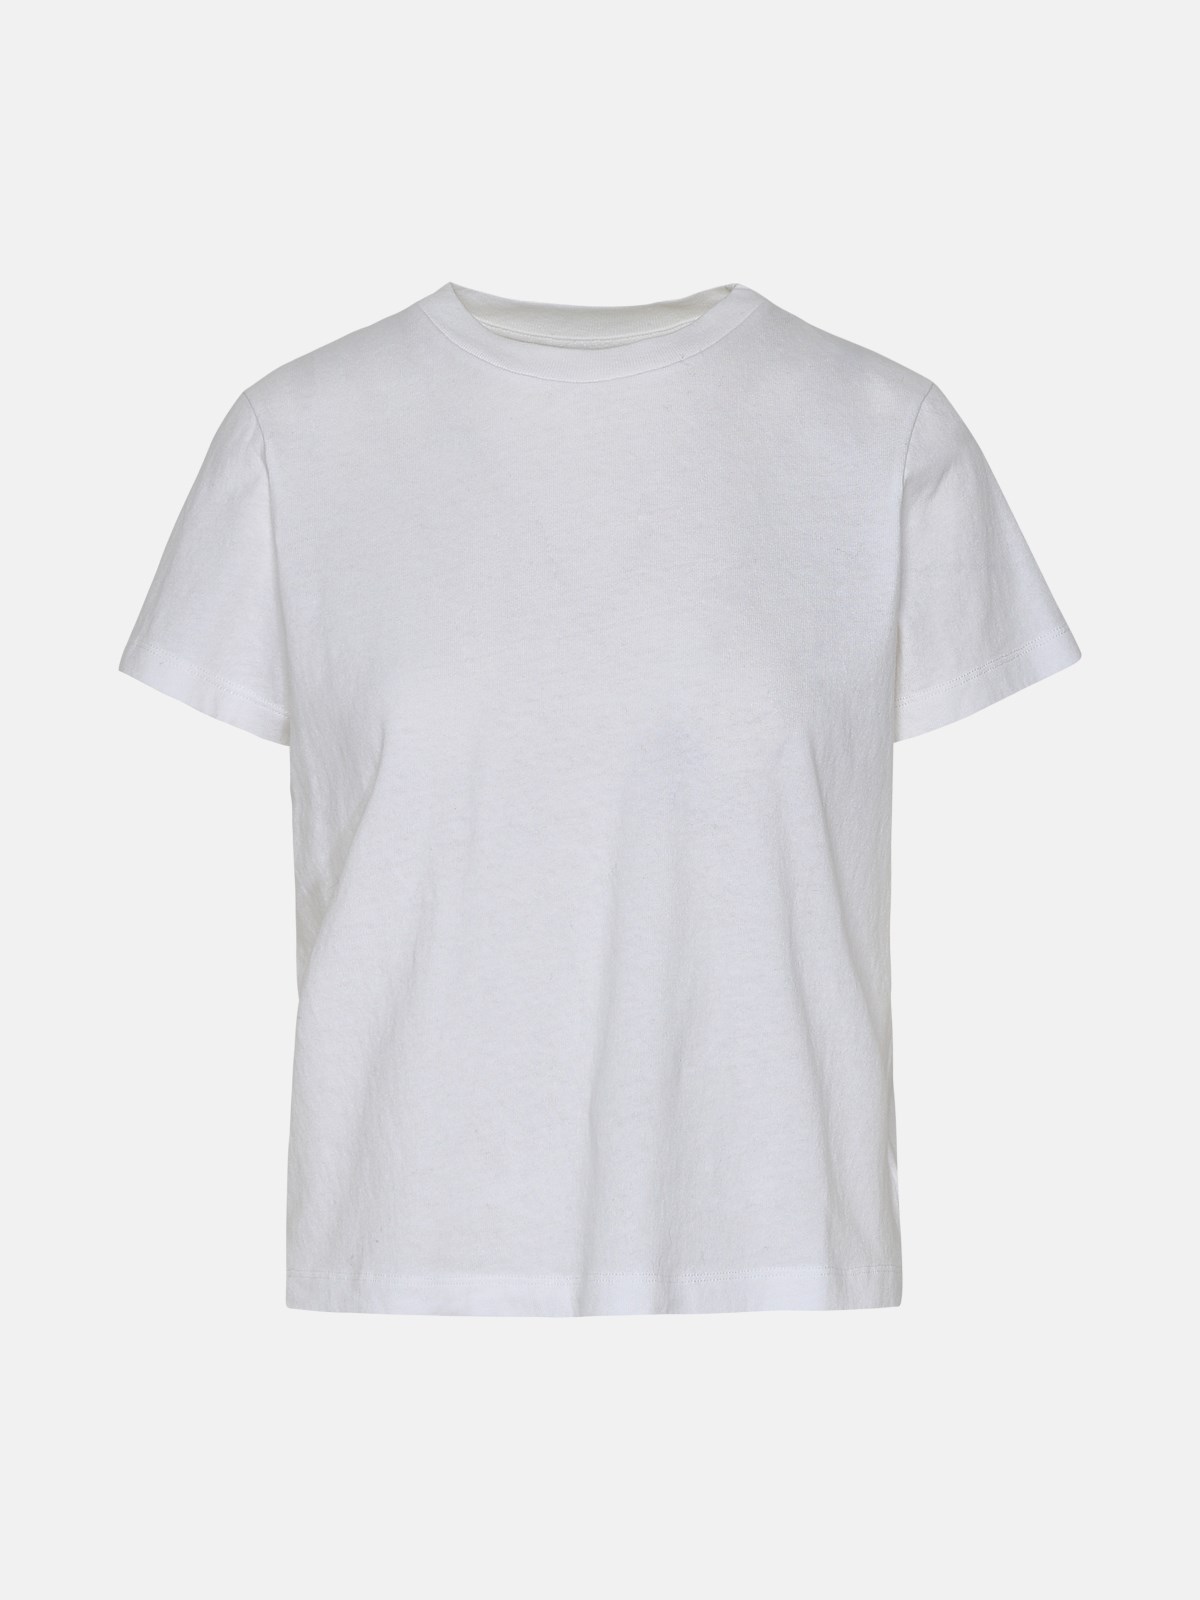 Khaite White Cotton Emmylou T-shirt